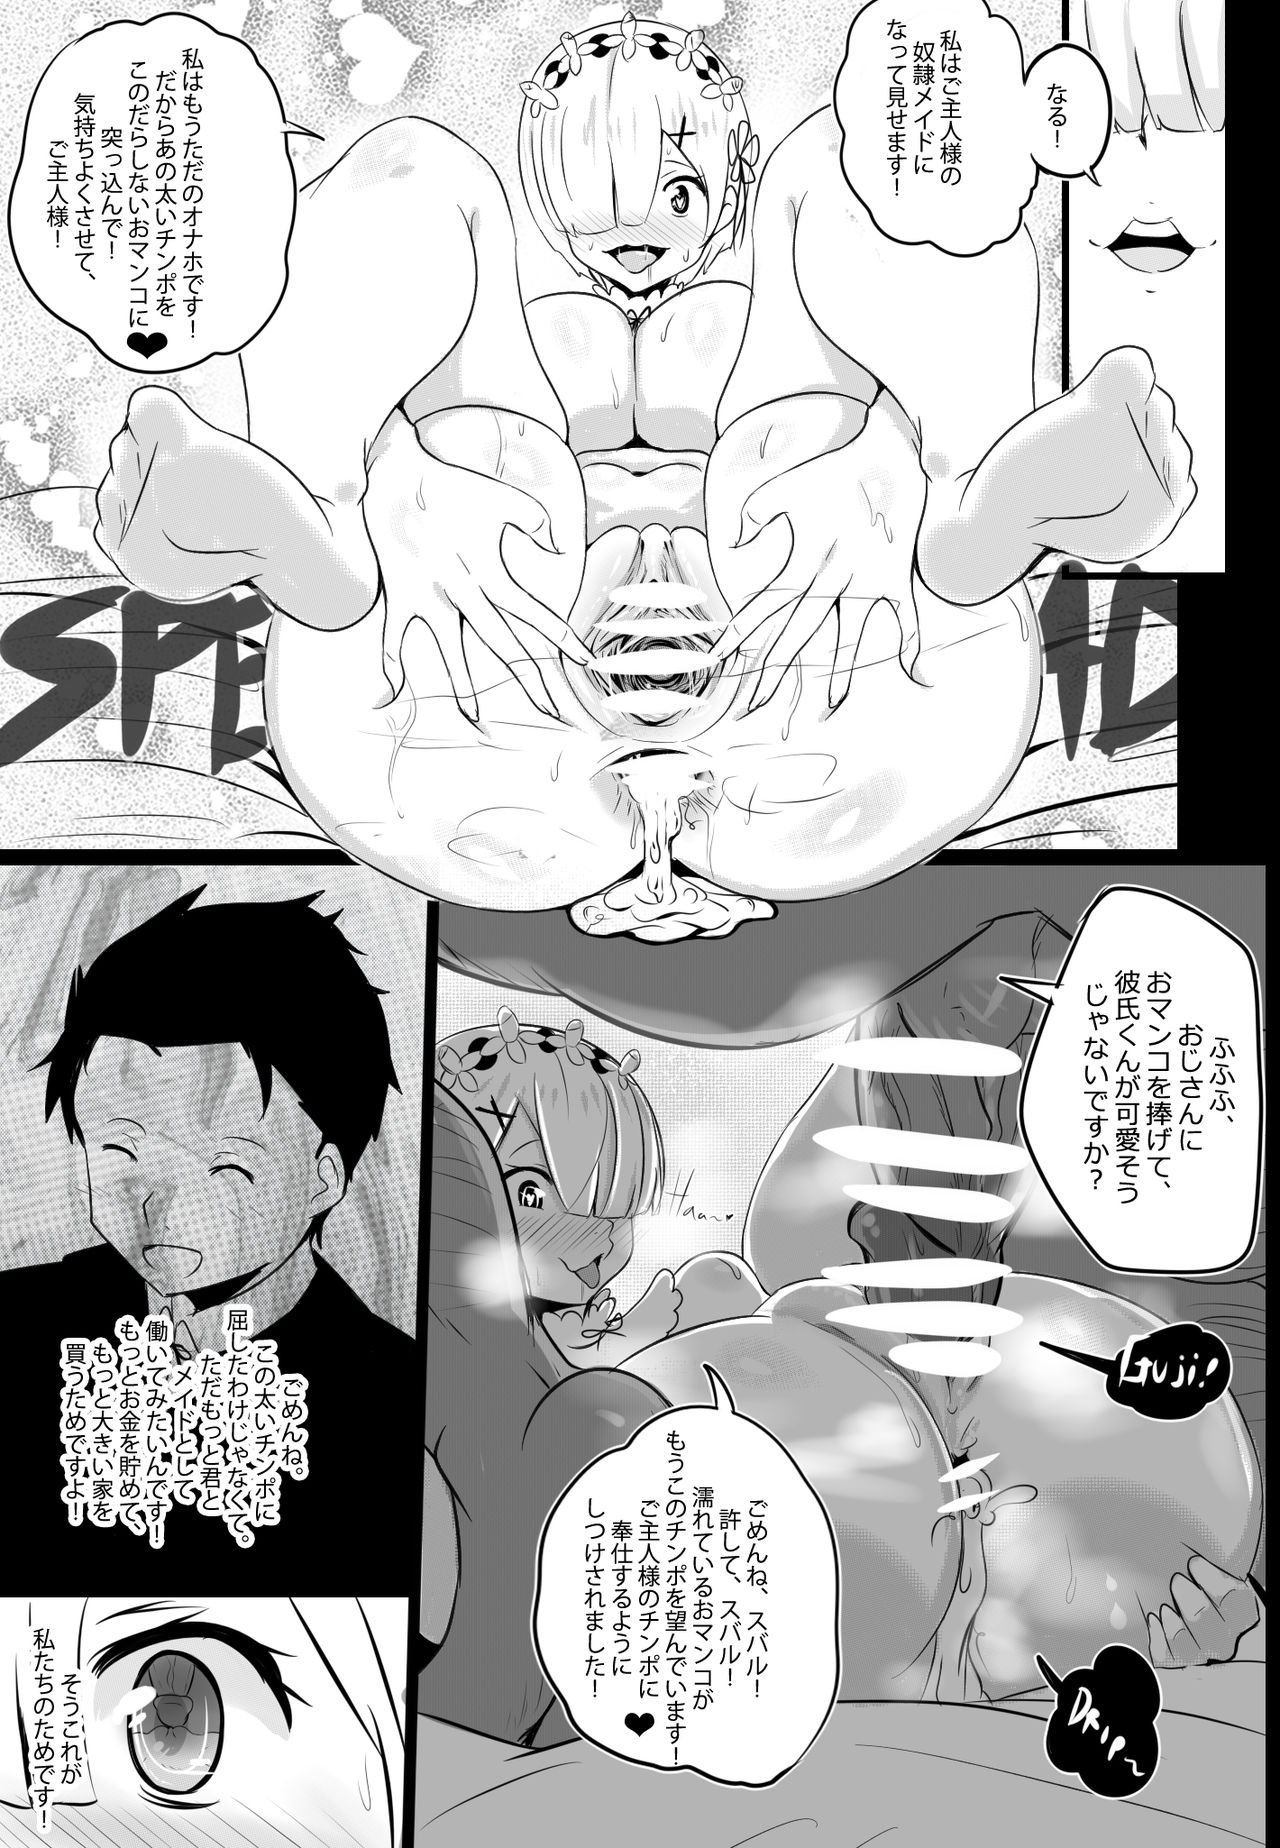 [Merkonig] B-Trayal 17 Rem (Re:Zero kara Hajimeru Isekai Seikatsu) page 11 full